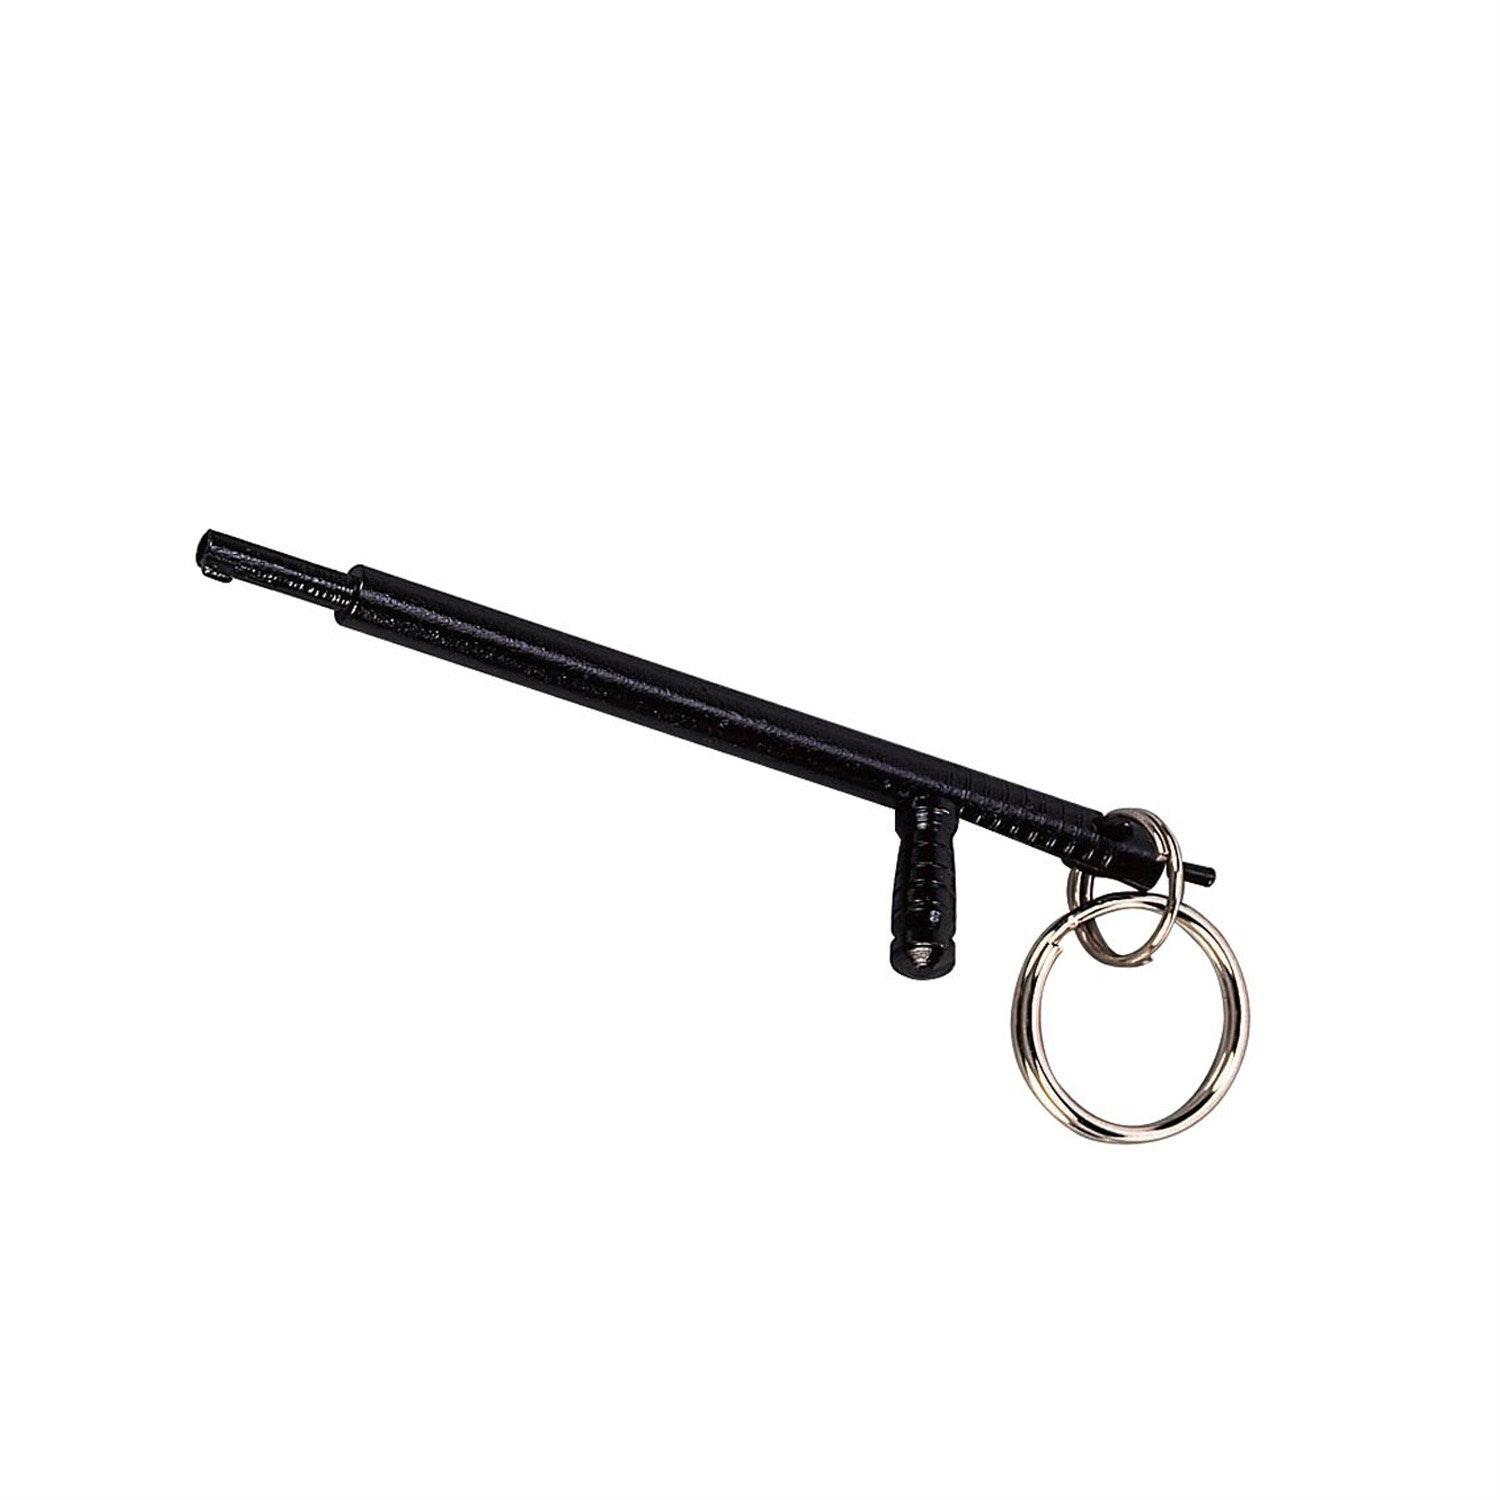 The Delta Handcuff Key - Rogue Dynamics